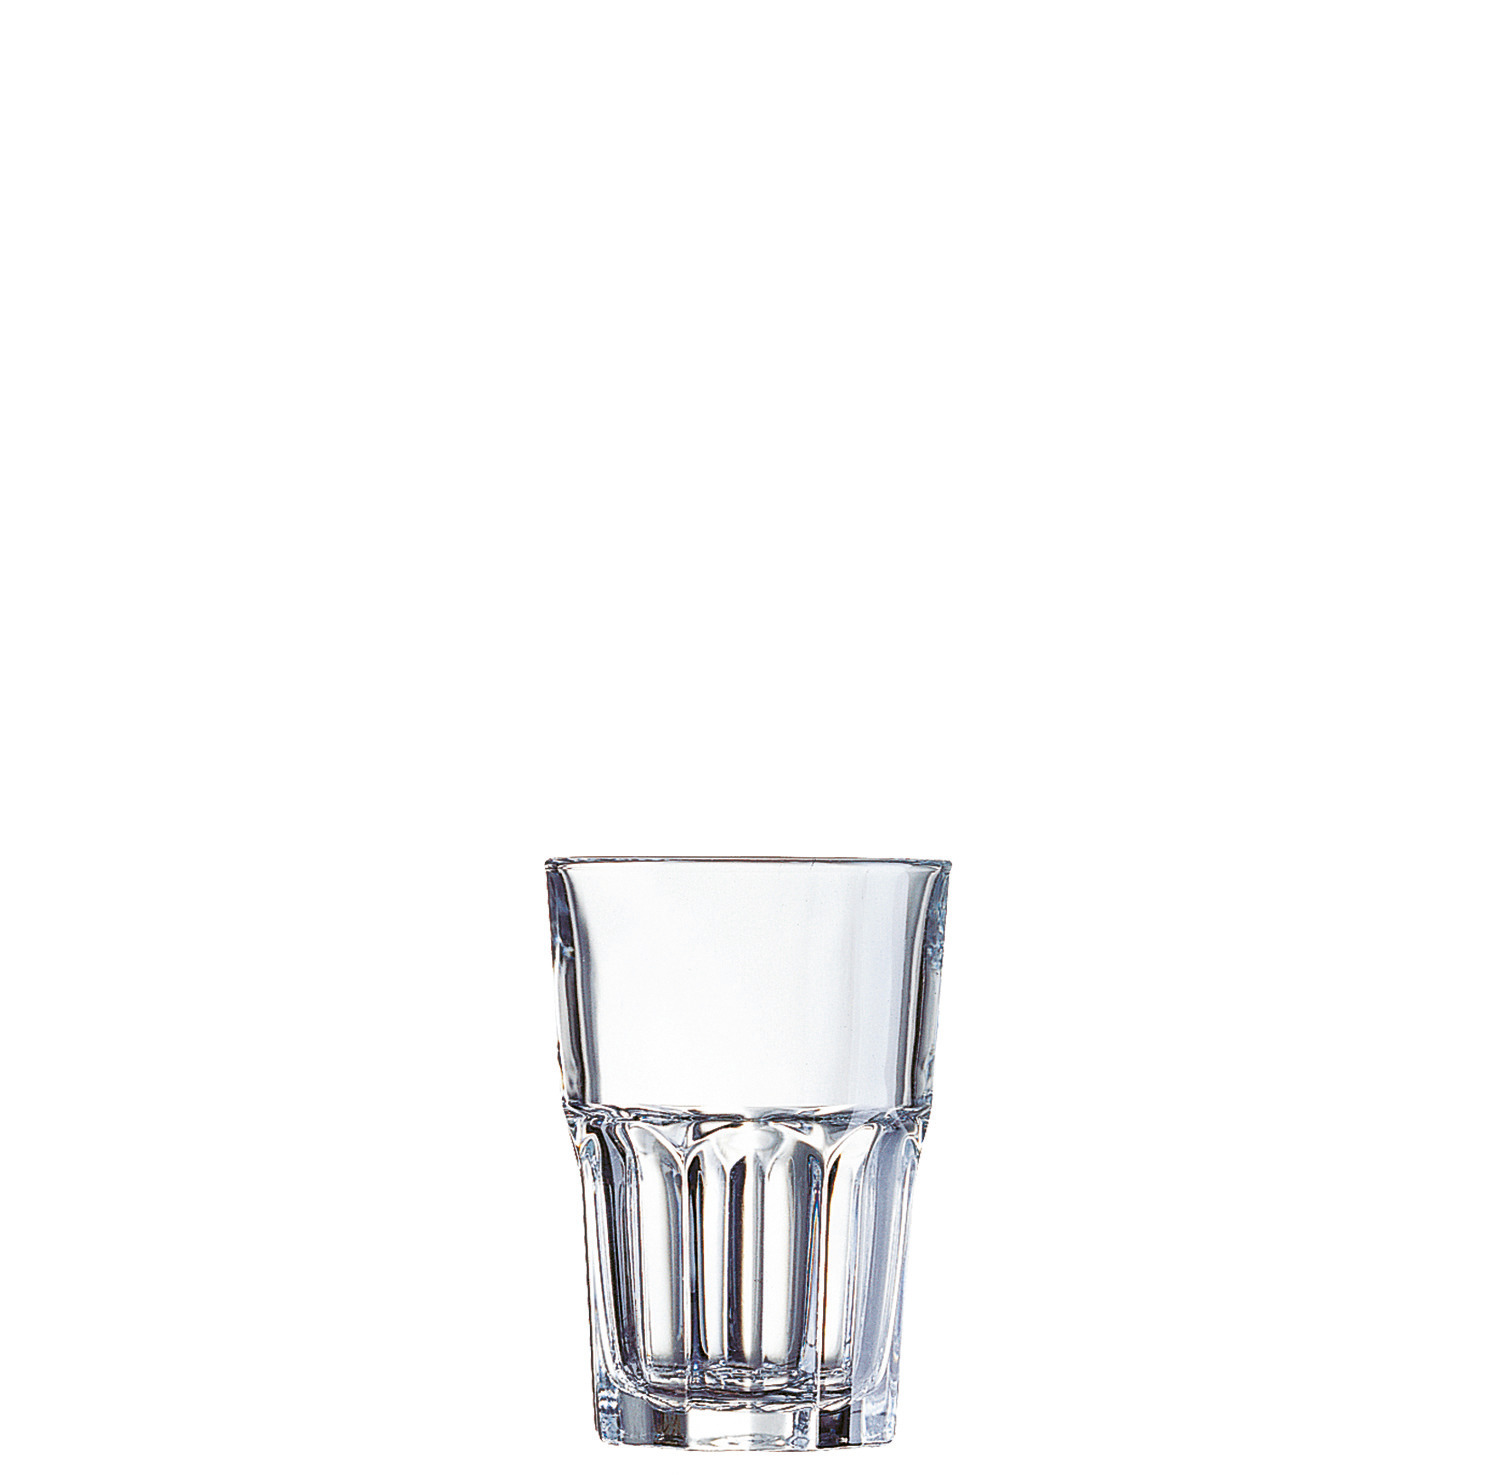 Longdrinkglas "FH35" stapelbar 84 mm / 0,35 l 0,20 /-/ transparent